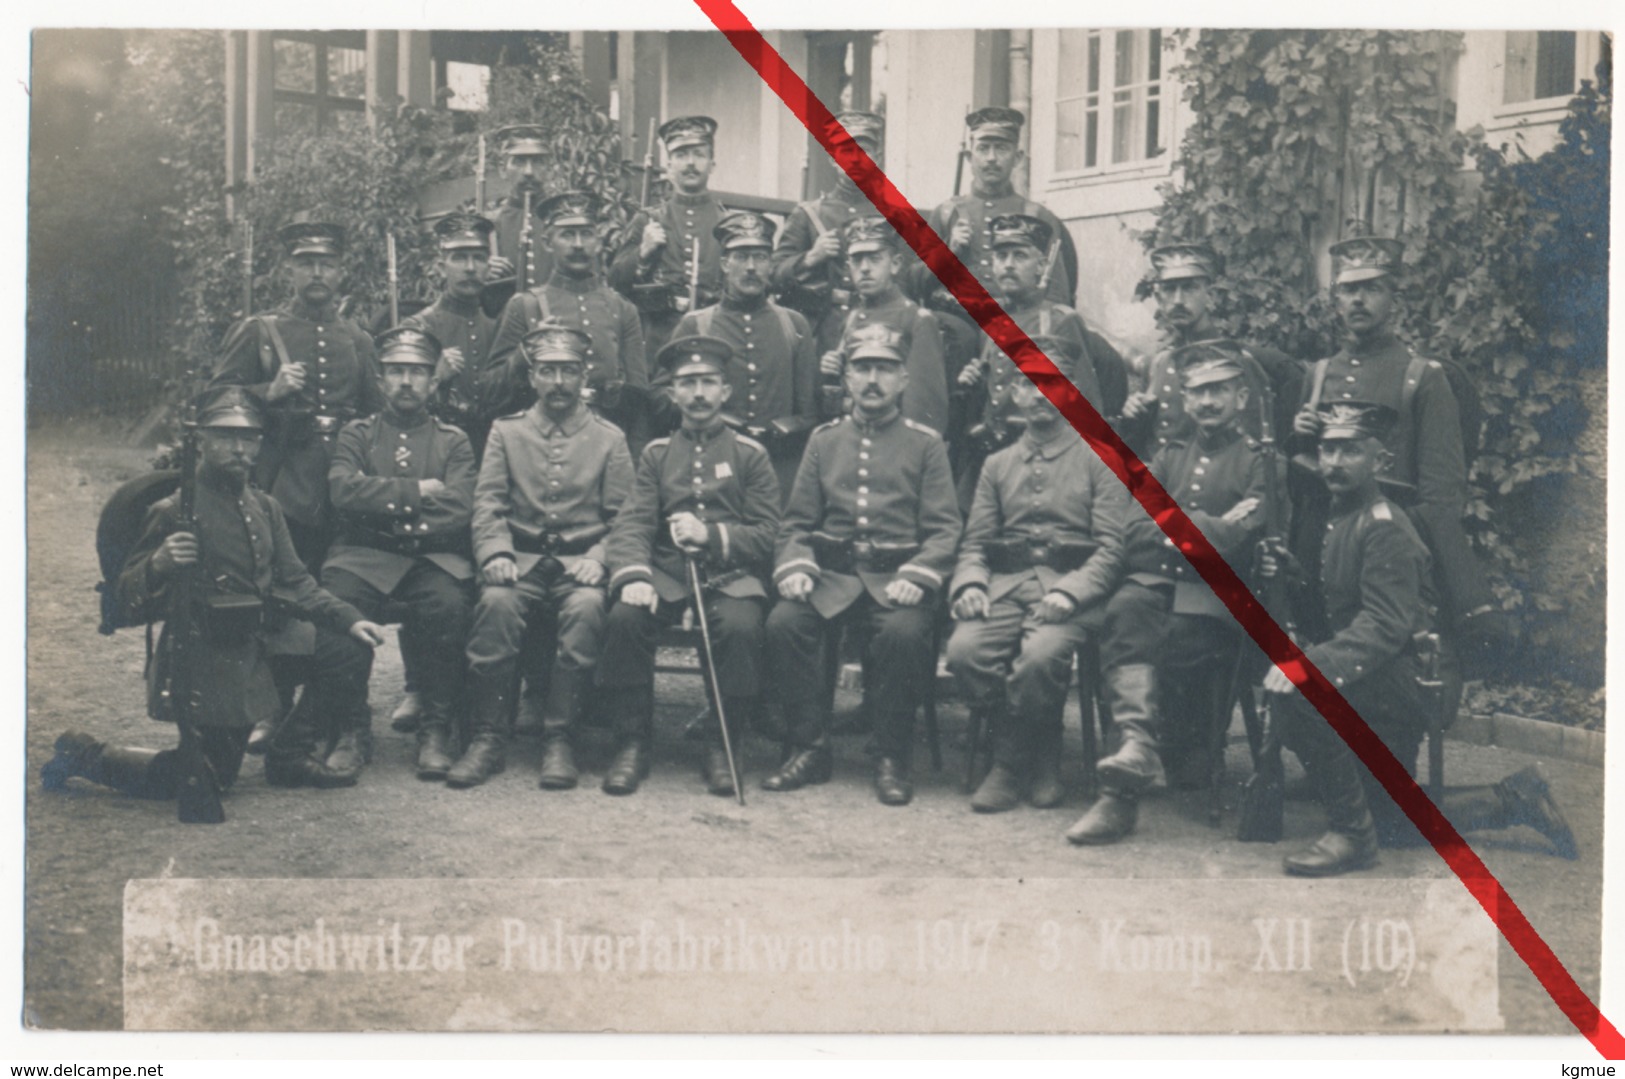 Doberschau-Gaußig - Gnaschwitz - Pulverfabrik Wache 1917 - 3. Kompanie - Wachmannschaft Landwehr Landsturm - Bautzen